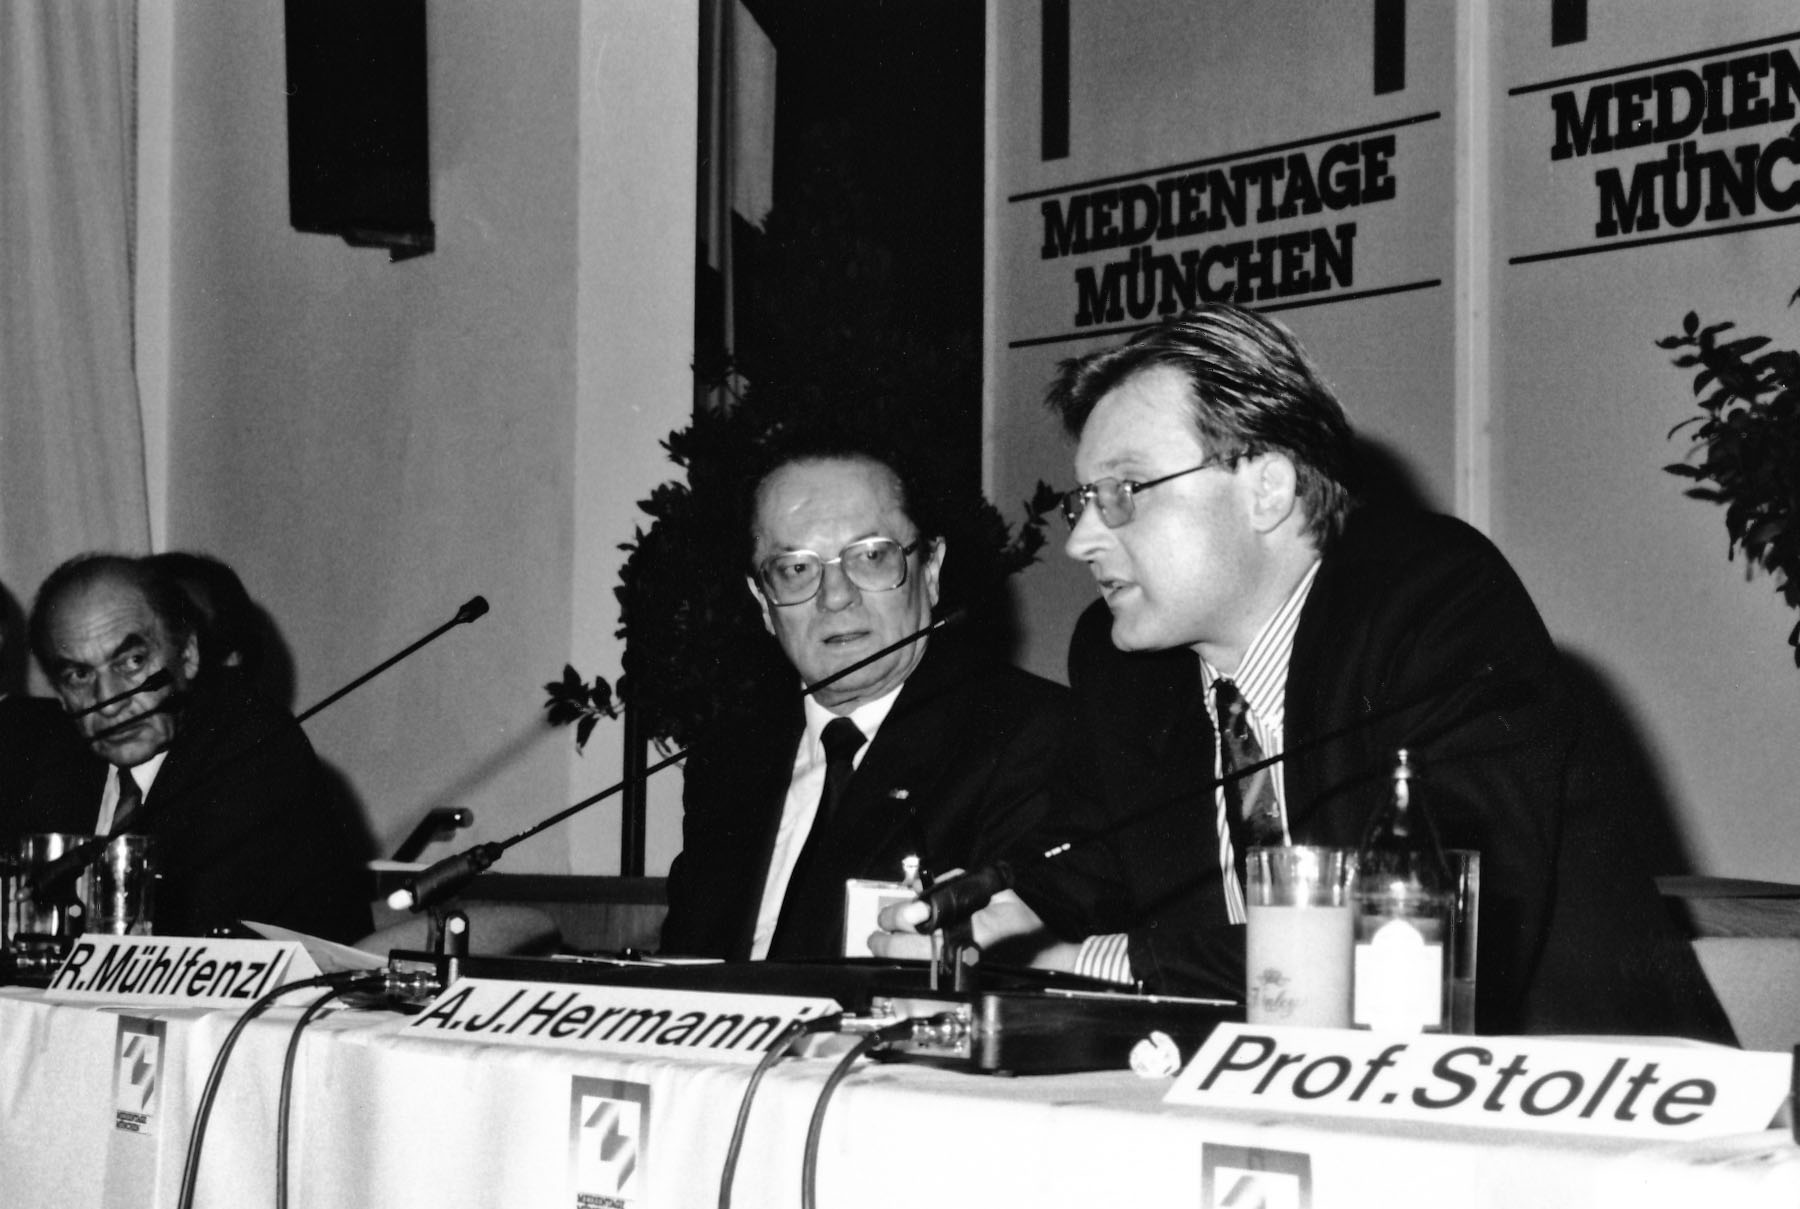 Professor Hermanni auf den Münchner Medientage 1988.